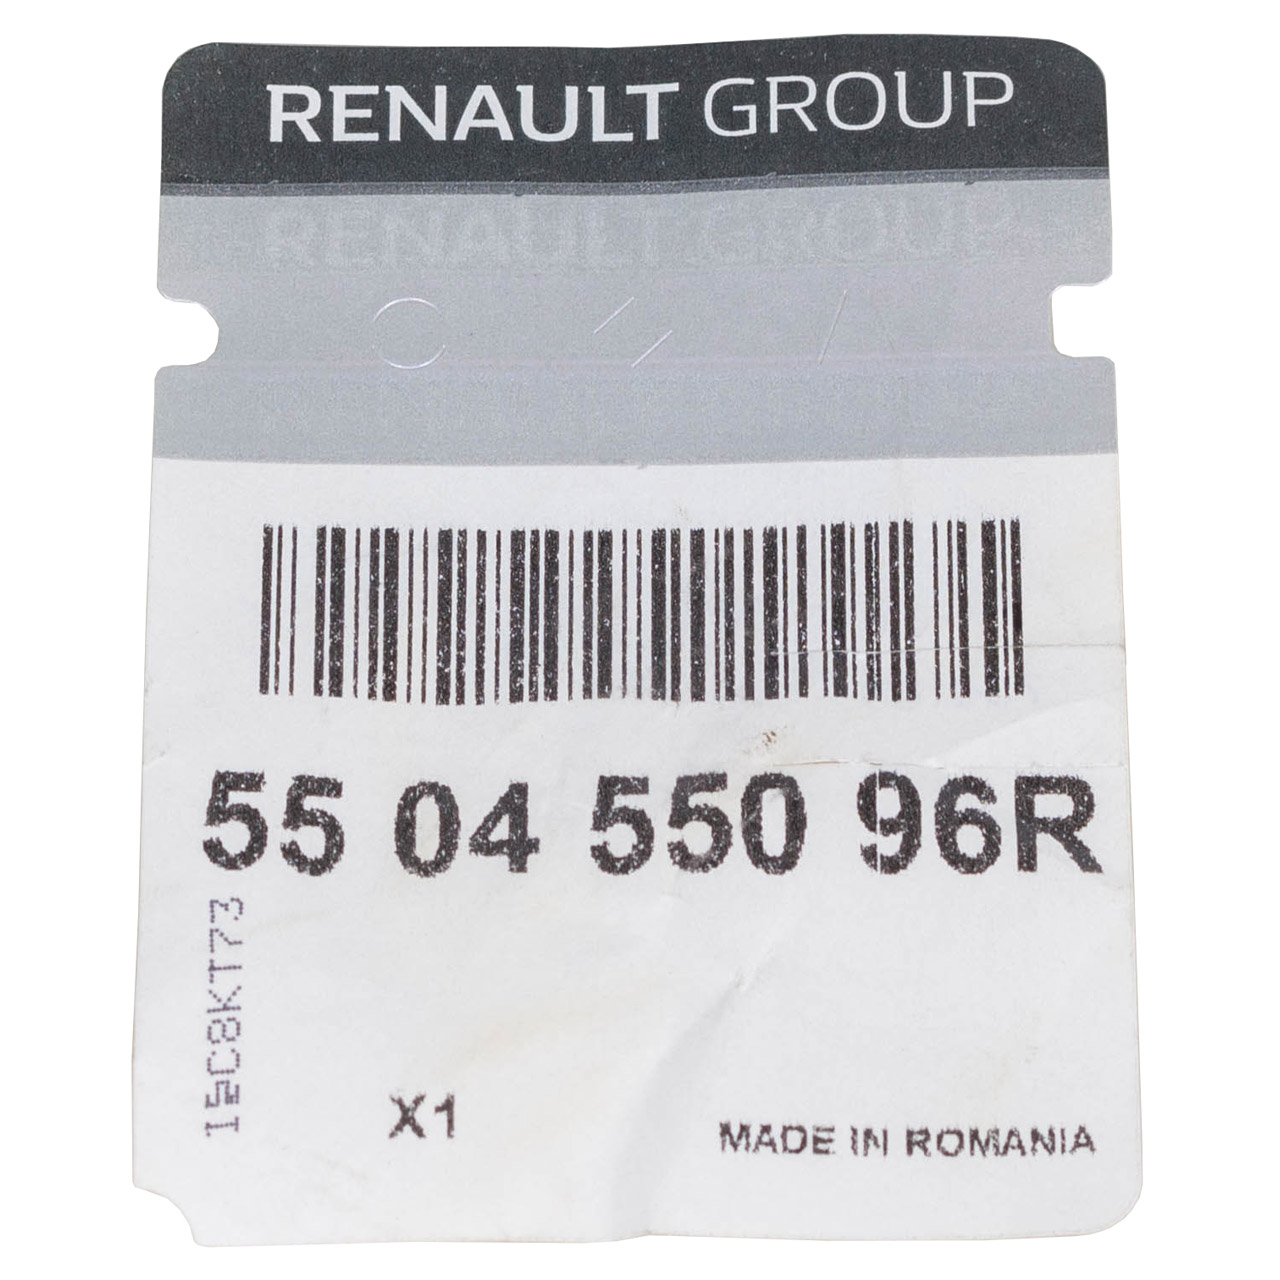 ORIGINAL Renault Silentbuchsensatz Lagersatz Hinterachse Clio 3 4 550455096R